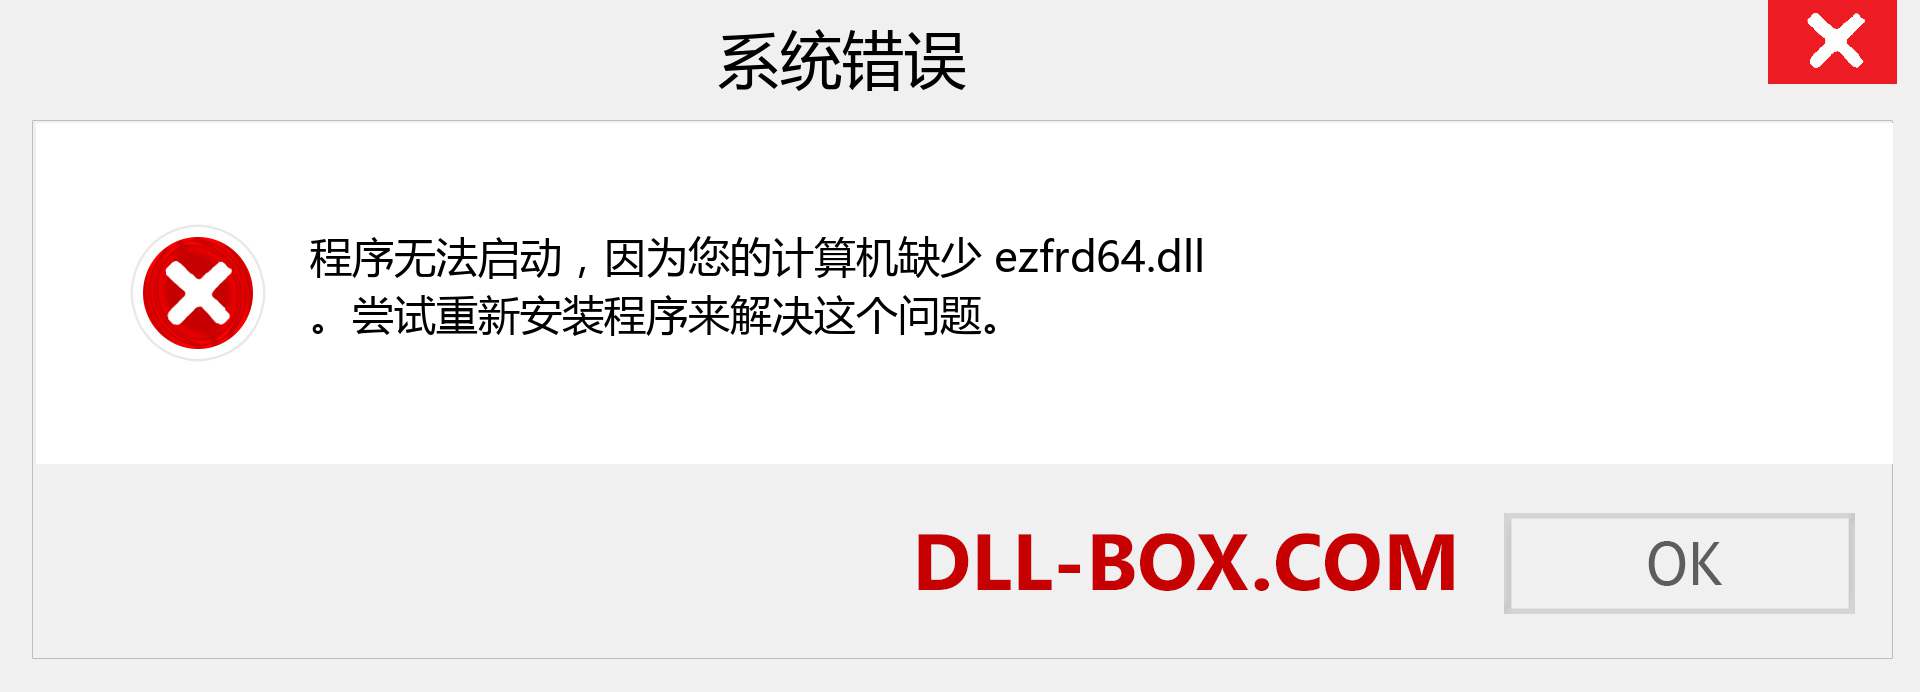 ezfrd64.dll 文件丢失？。 适用于 Windows 7、8、10 的下载 - 修复 Windows、照片、图像上的 ezfrd64 dll 丢失错误